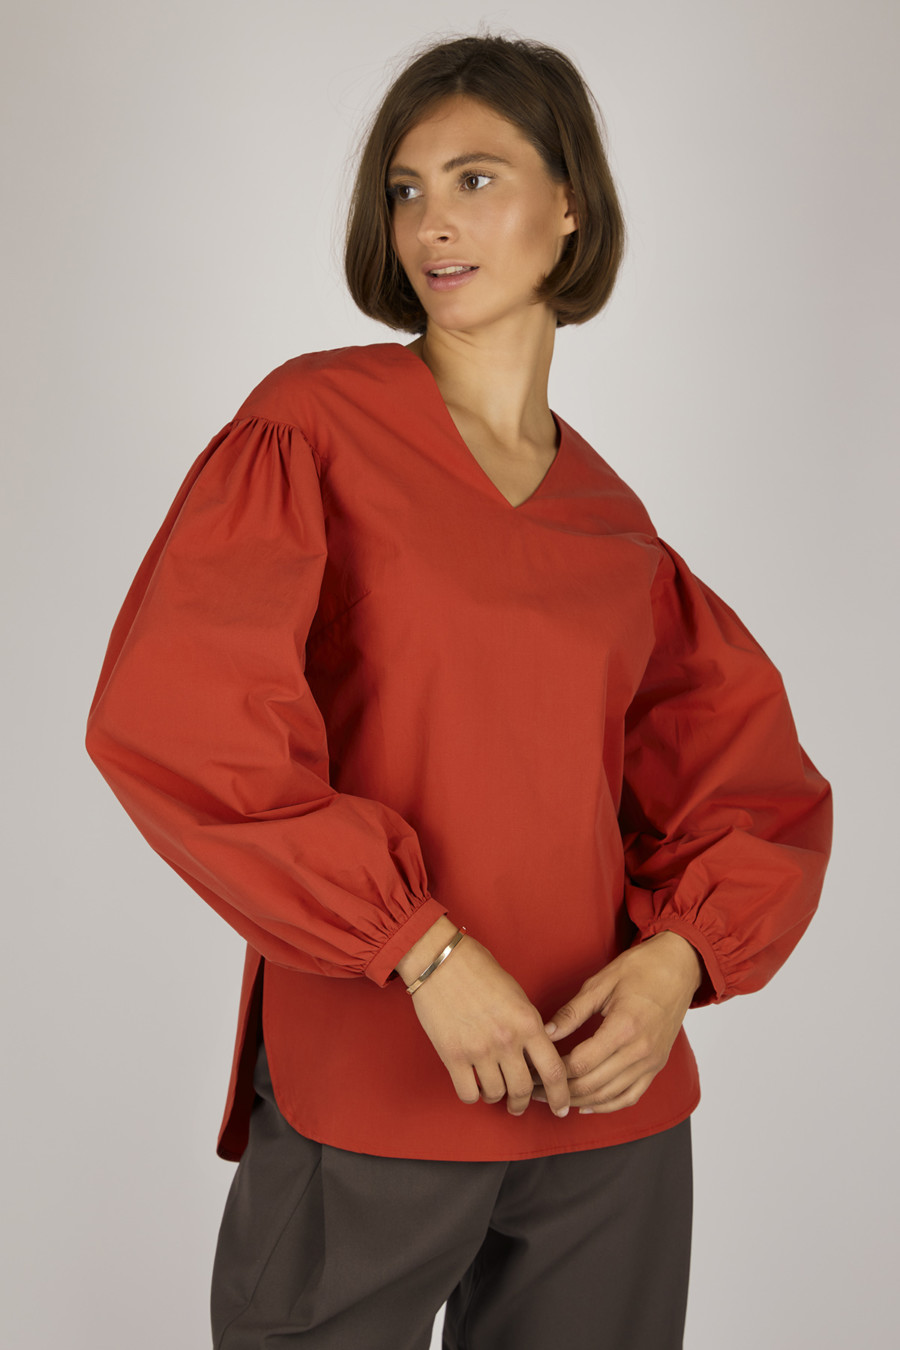 LOTTE – Bluse mit Puffärmeln – Farbe: Red Hot